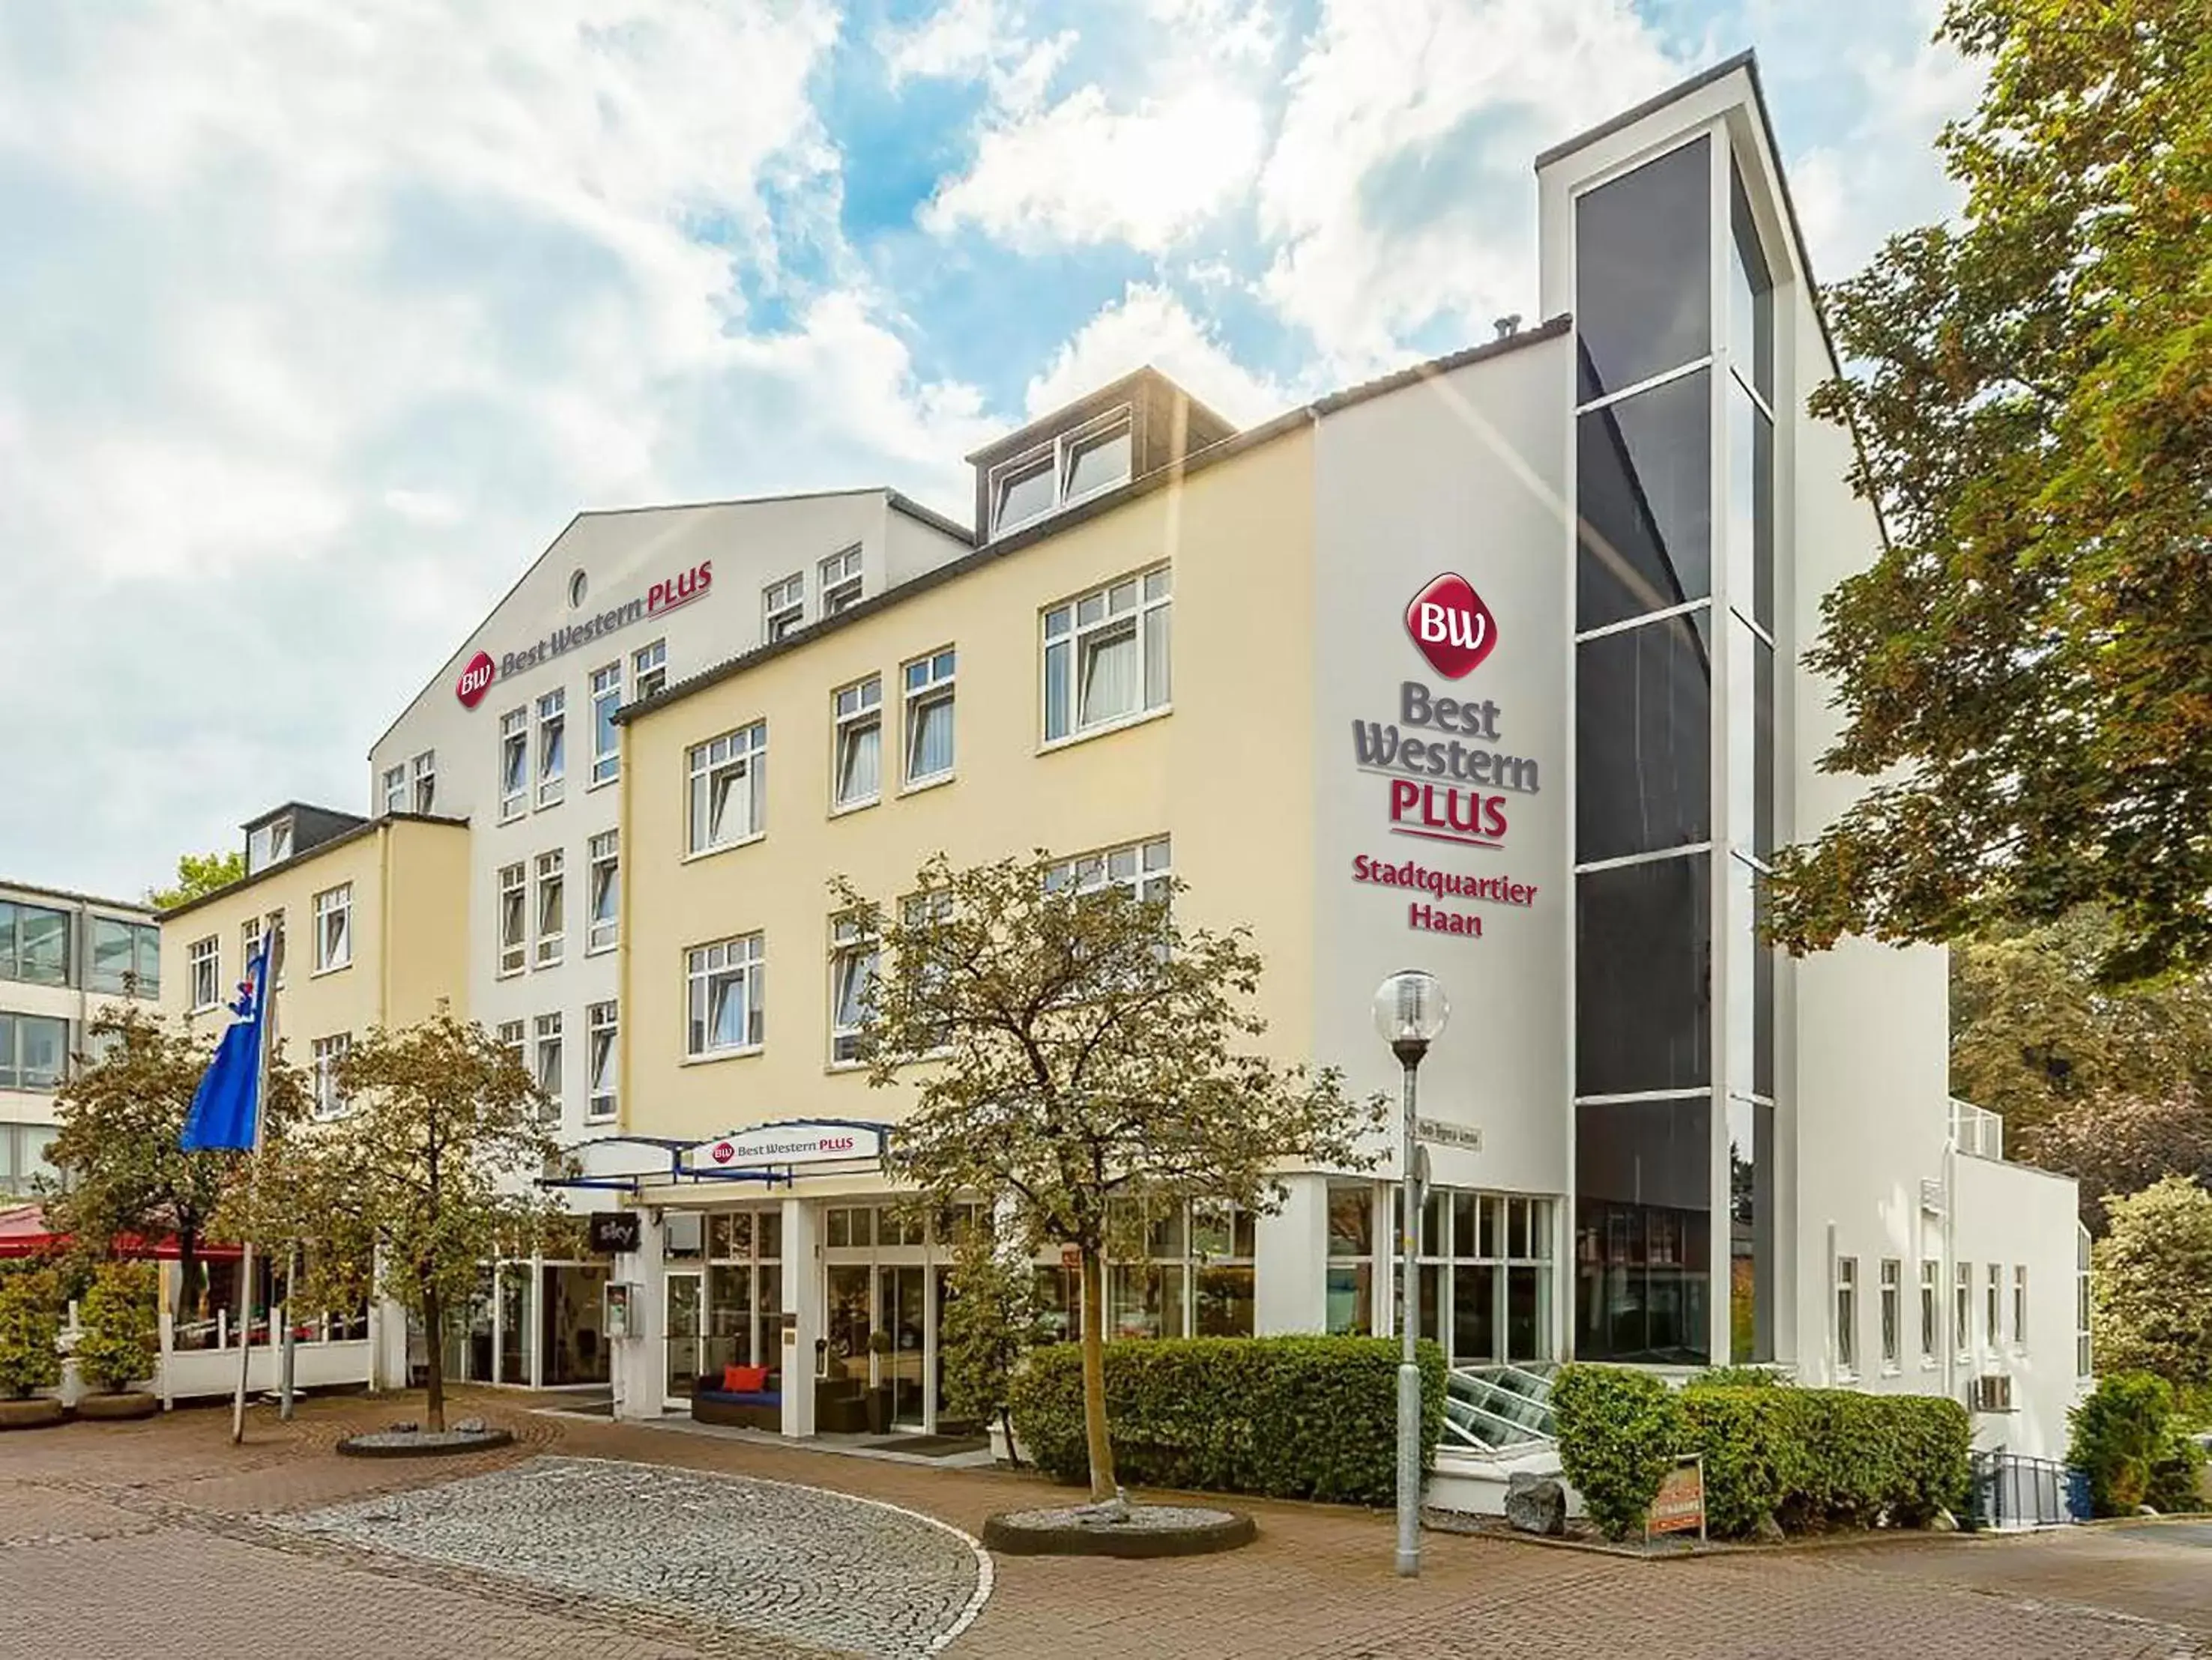 Property Building in Best Western Plus Hotel Stadtquartier Haan